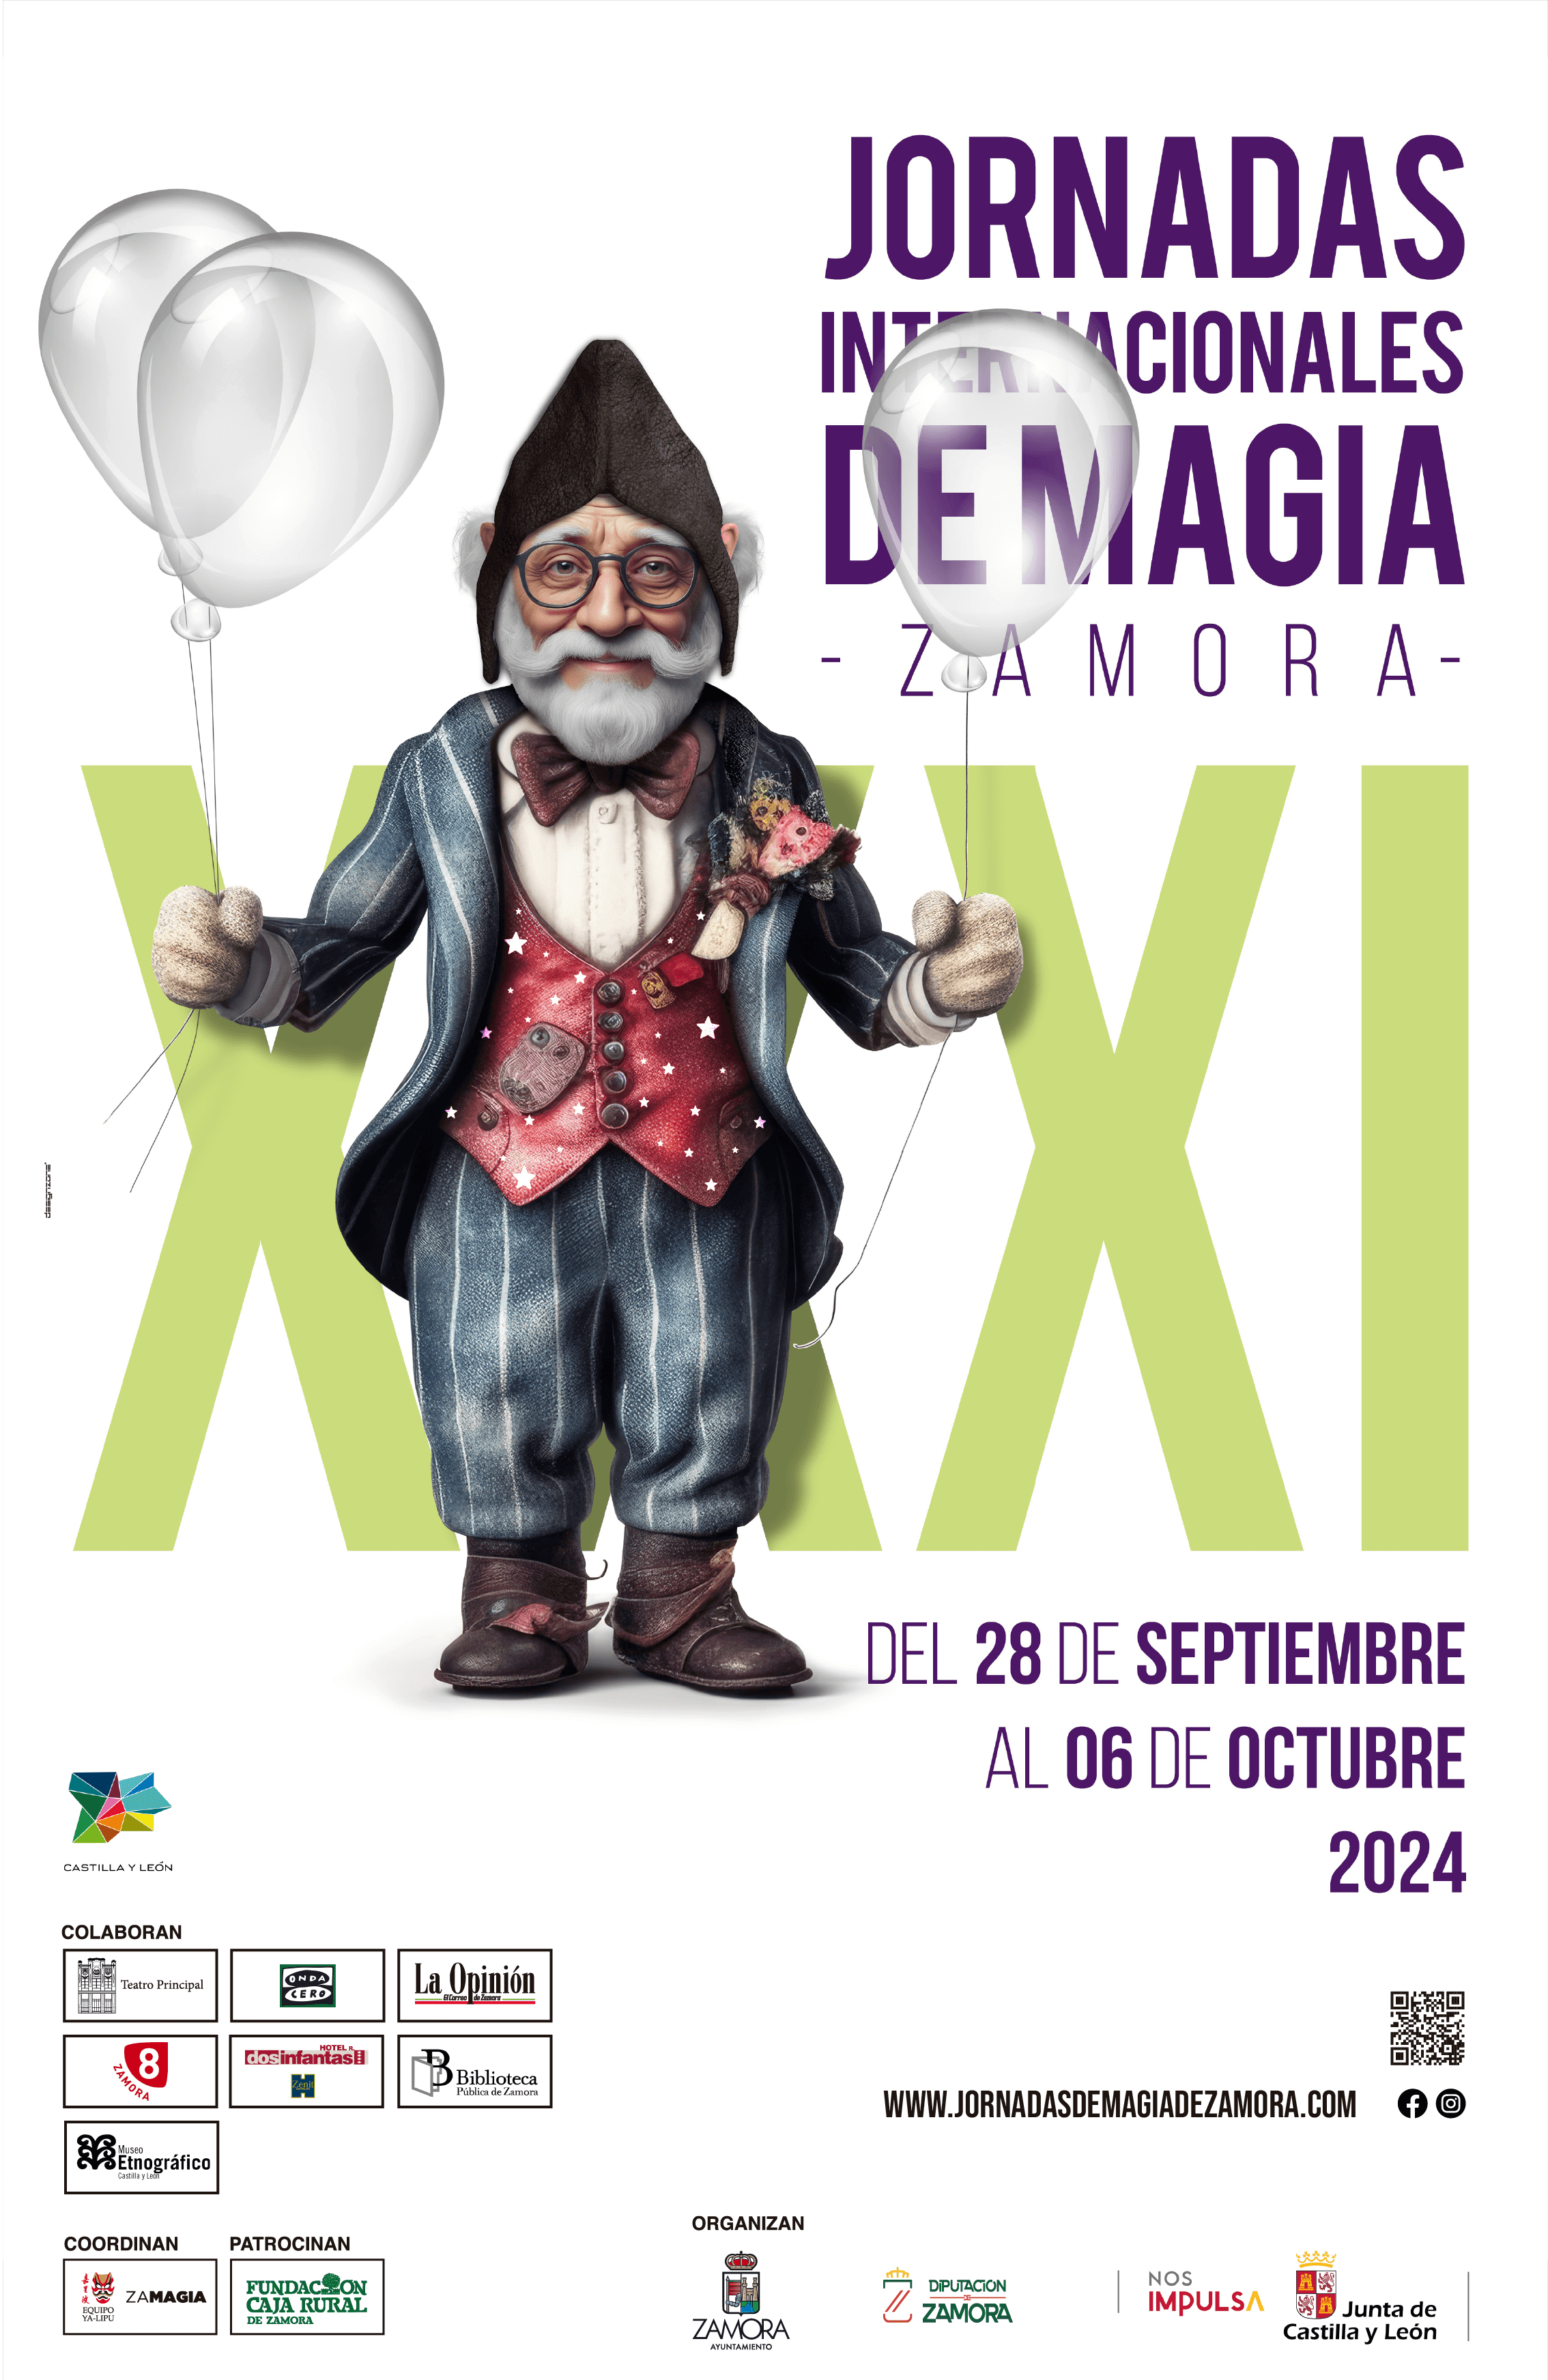 Jornadas internacionales de Magia - Zamora 2024